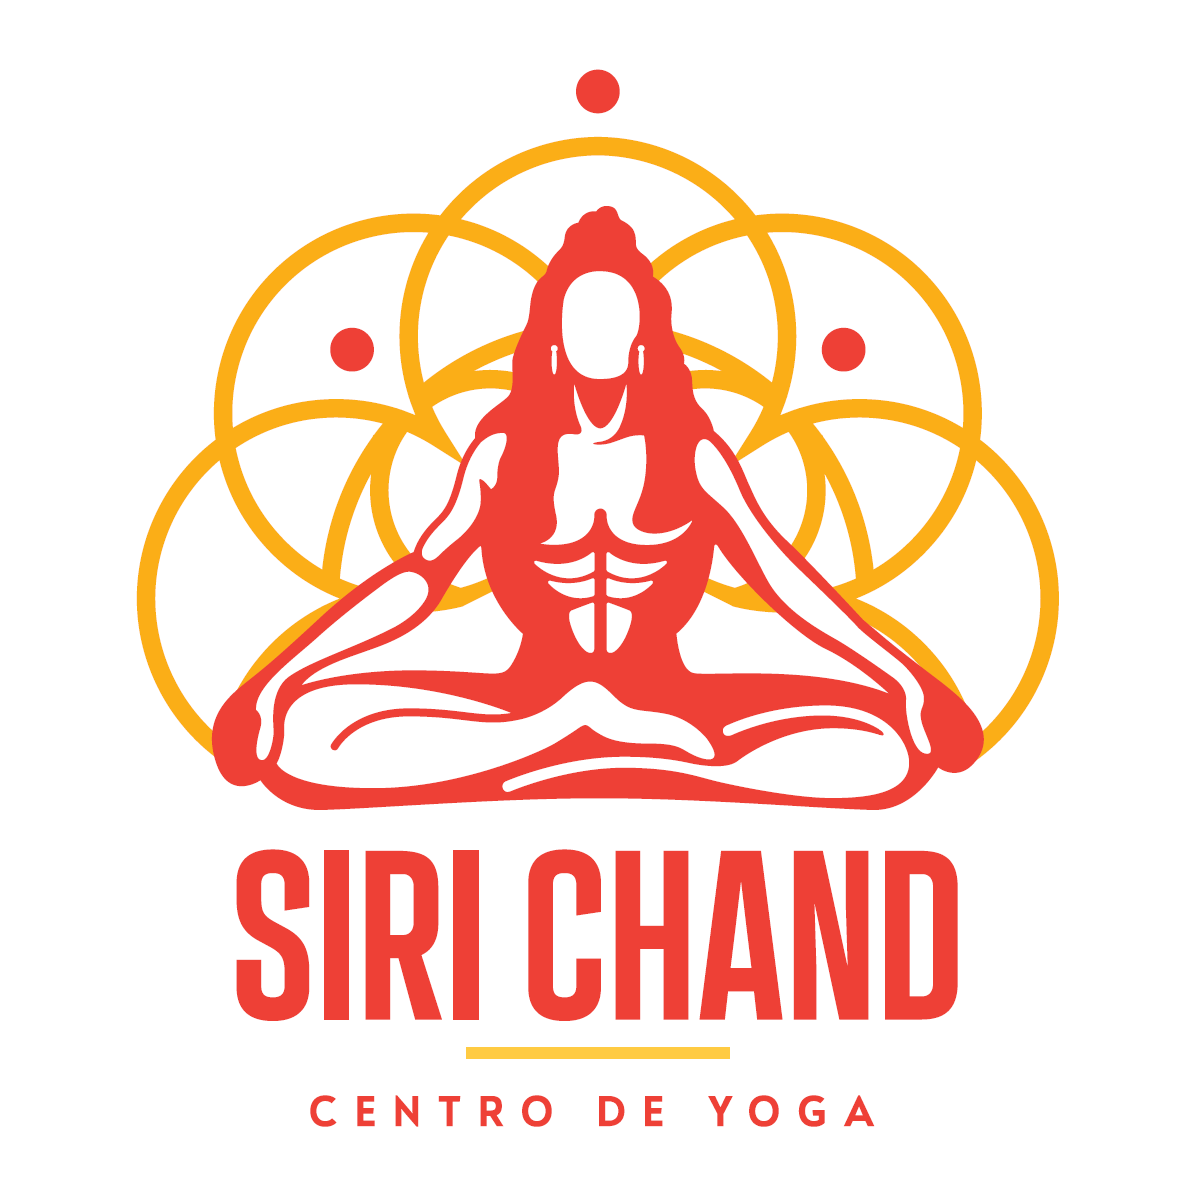 Centro de Yoga Siri Chand